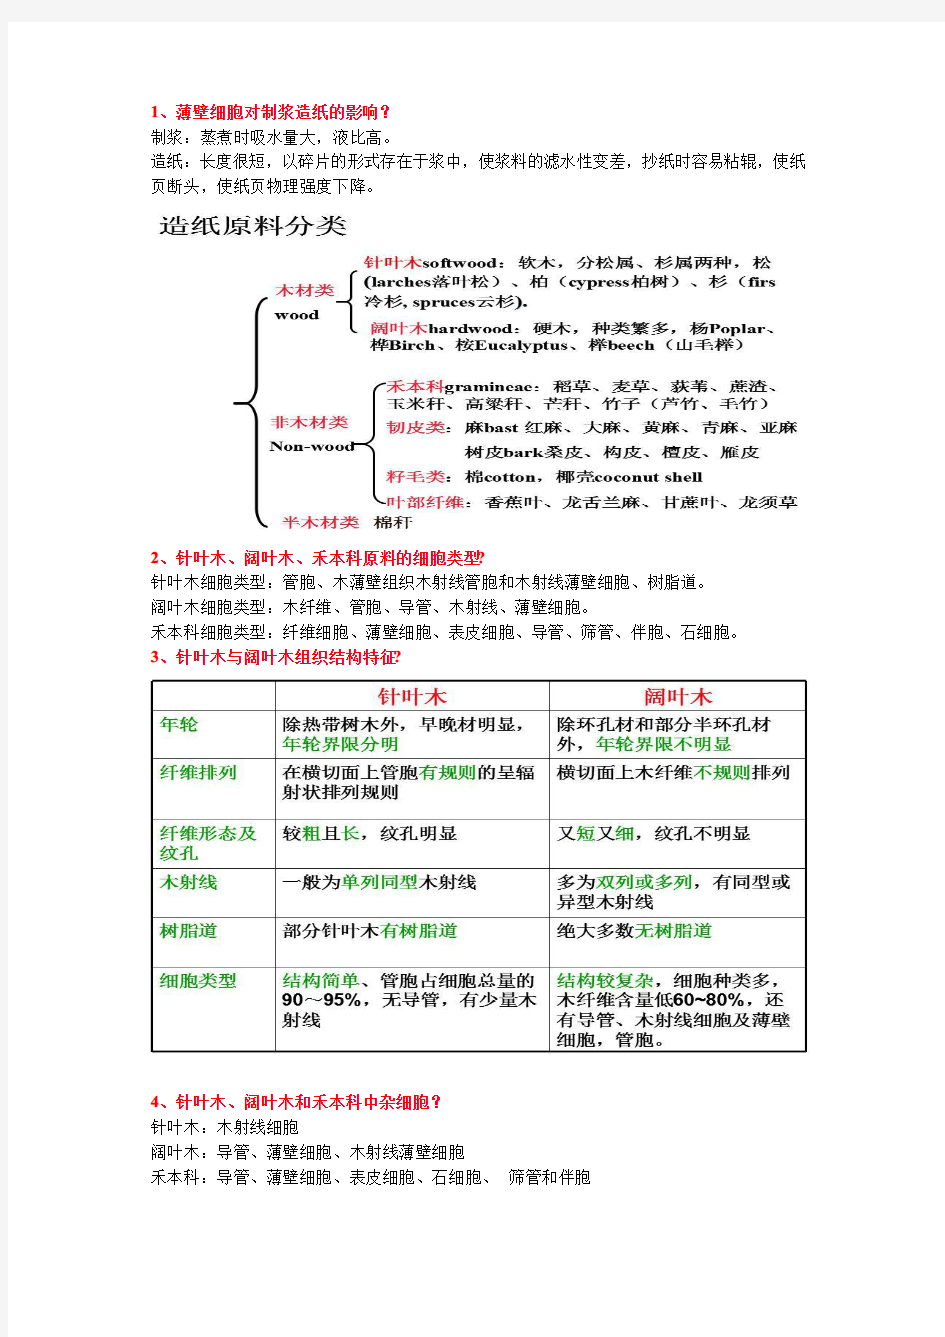 北京林业大学 考研 植物纤维化学复习题